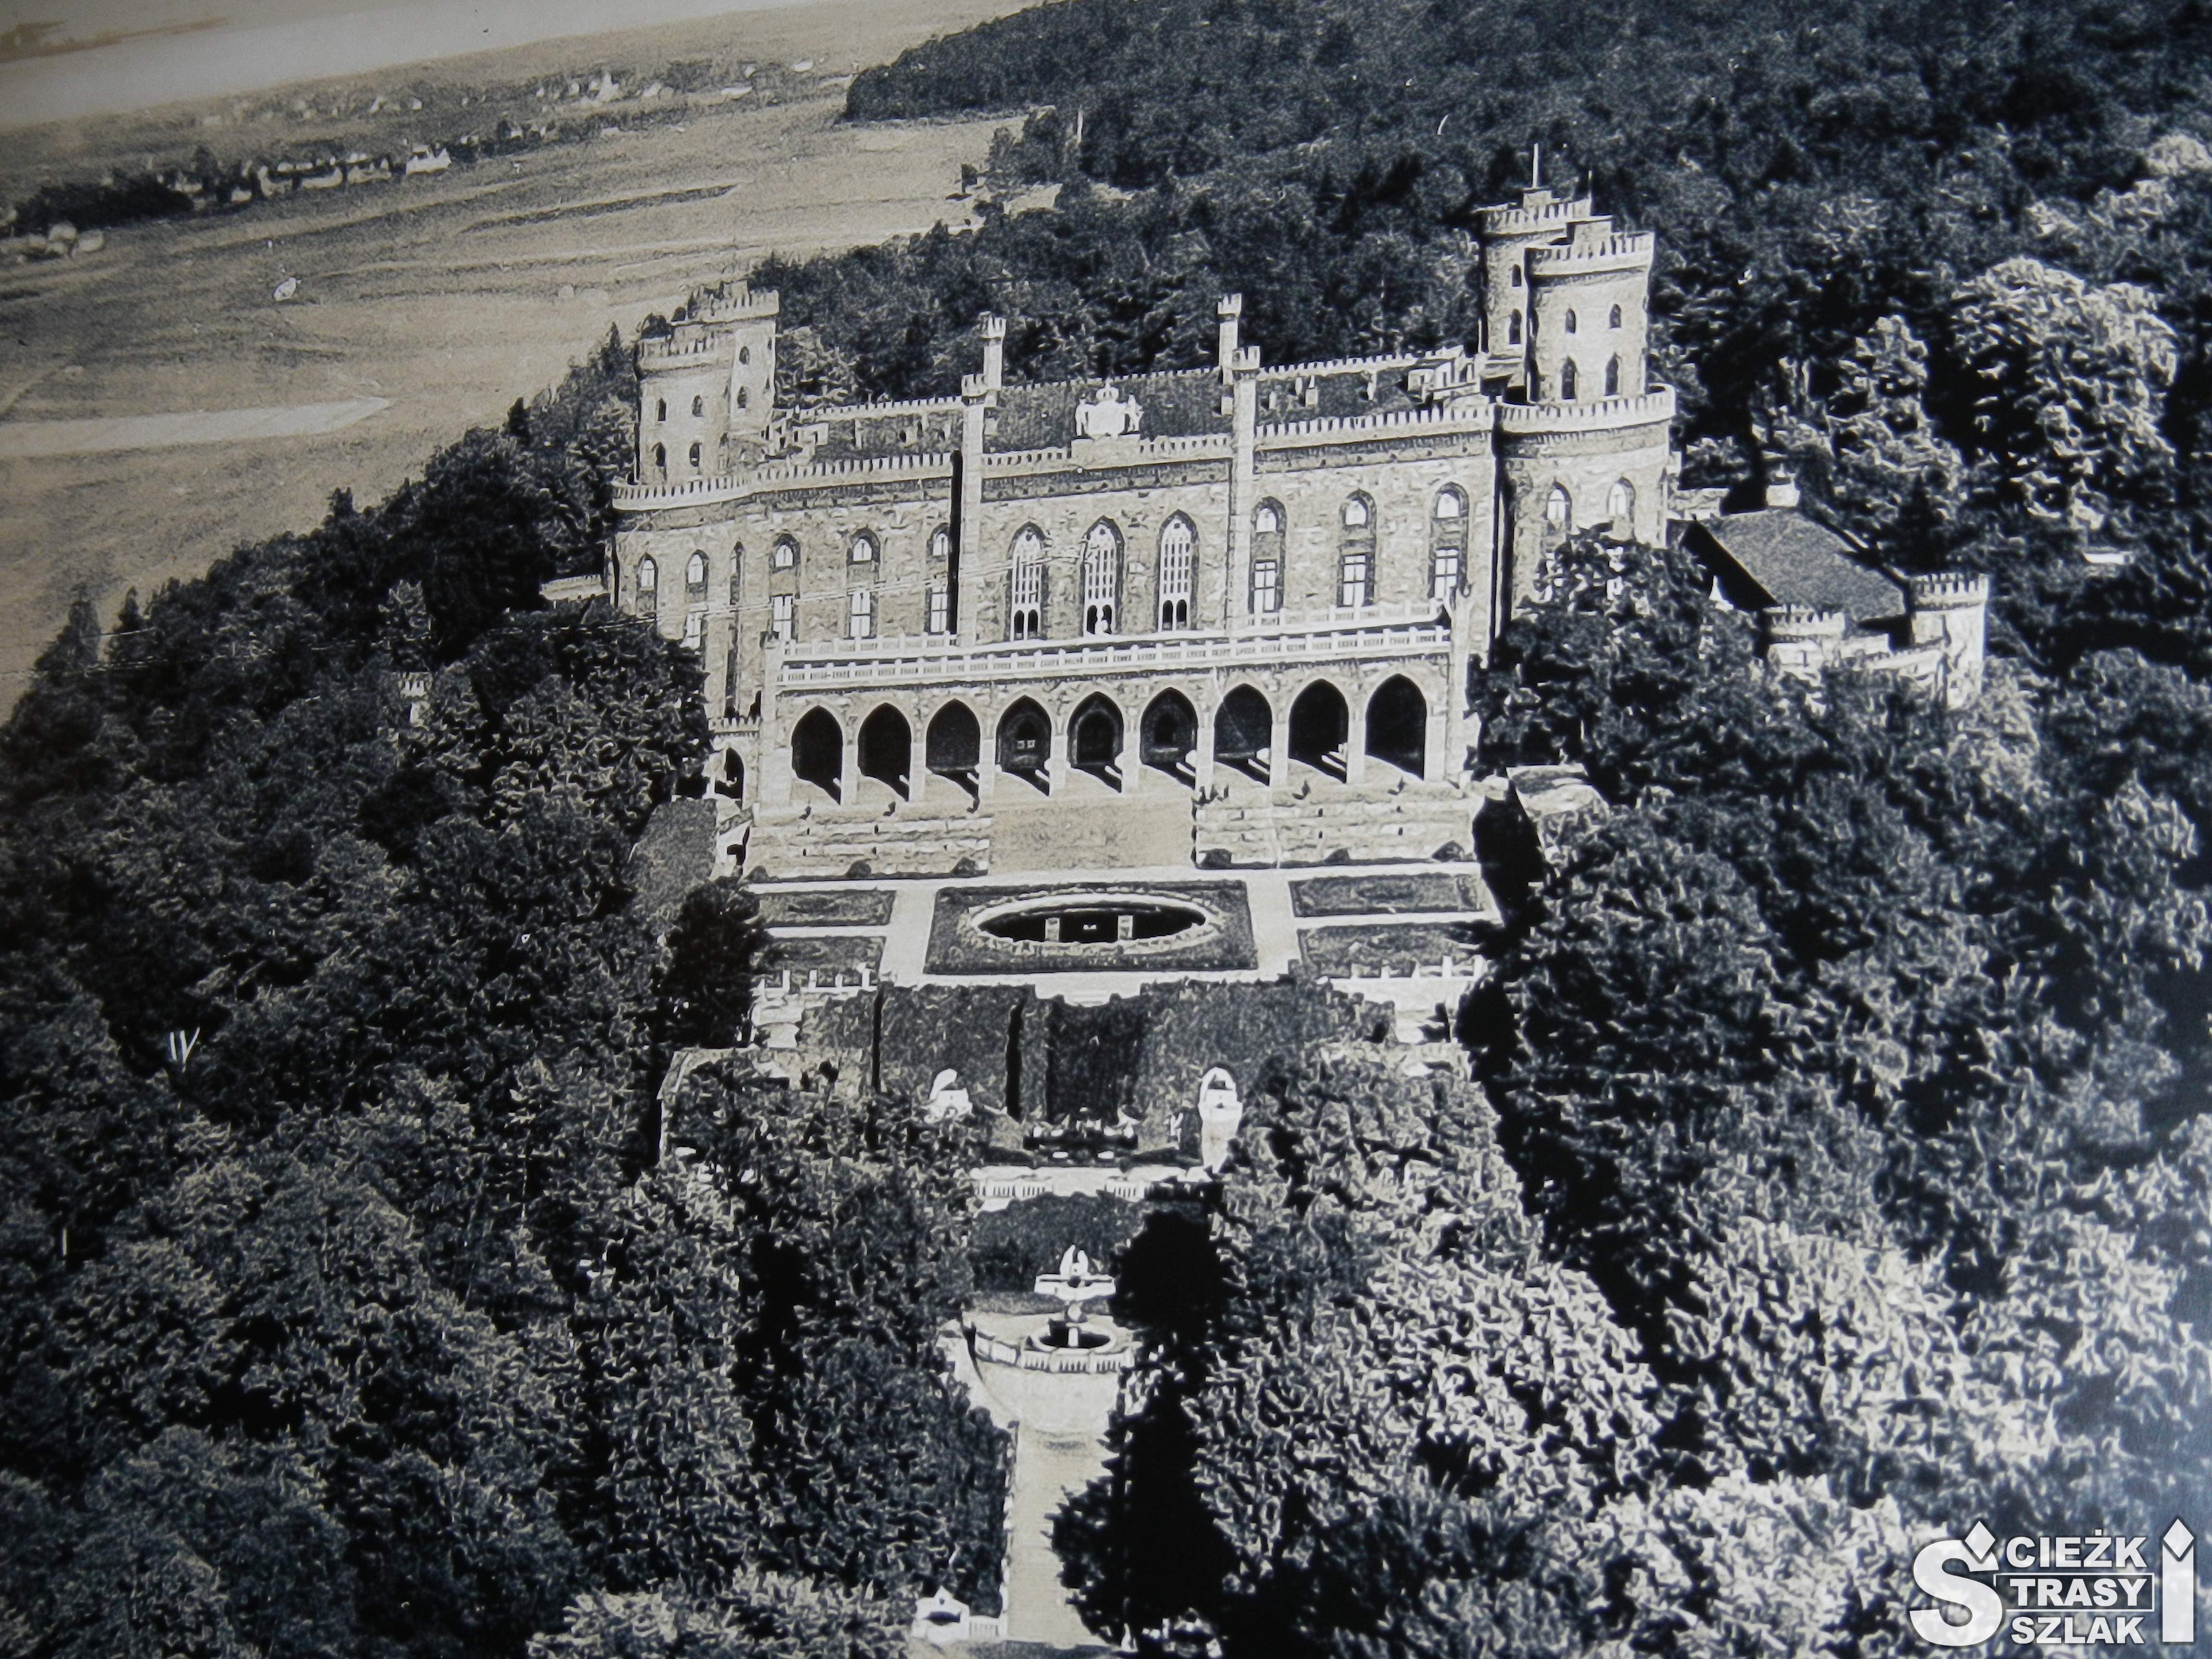 Czrno-biała ilustracja ukazująca Pałac Marianny Orańskiej w otoczeniu wysokich koron drzew na Dolnym Śląsku